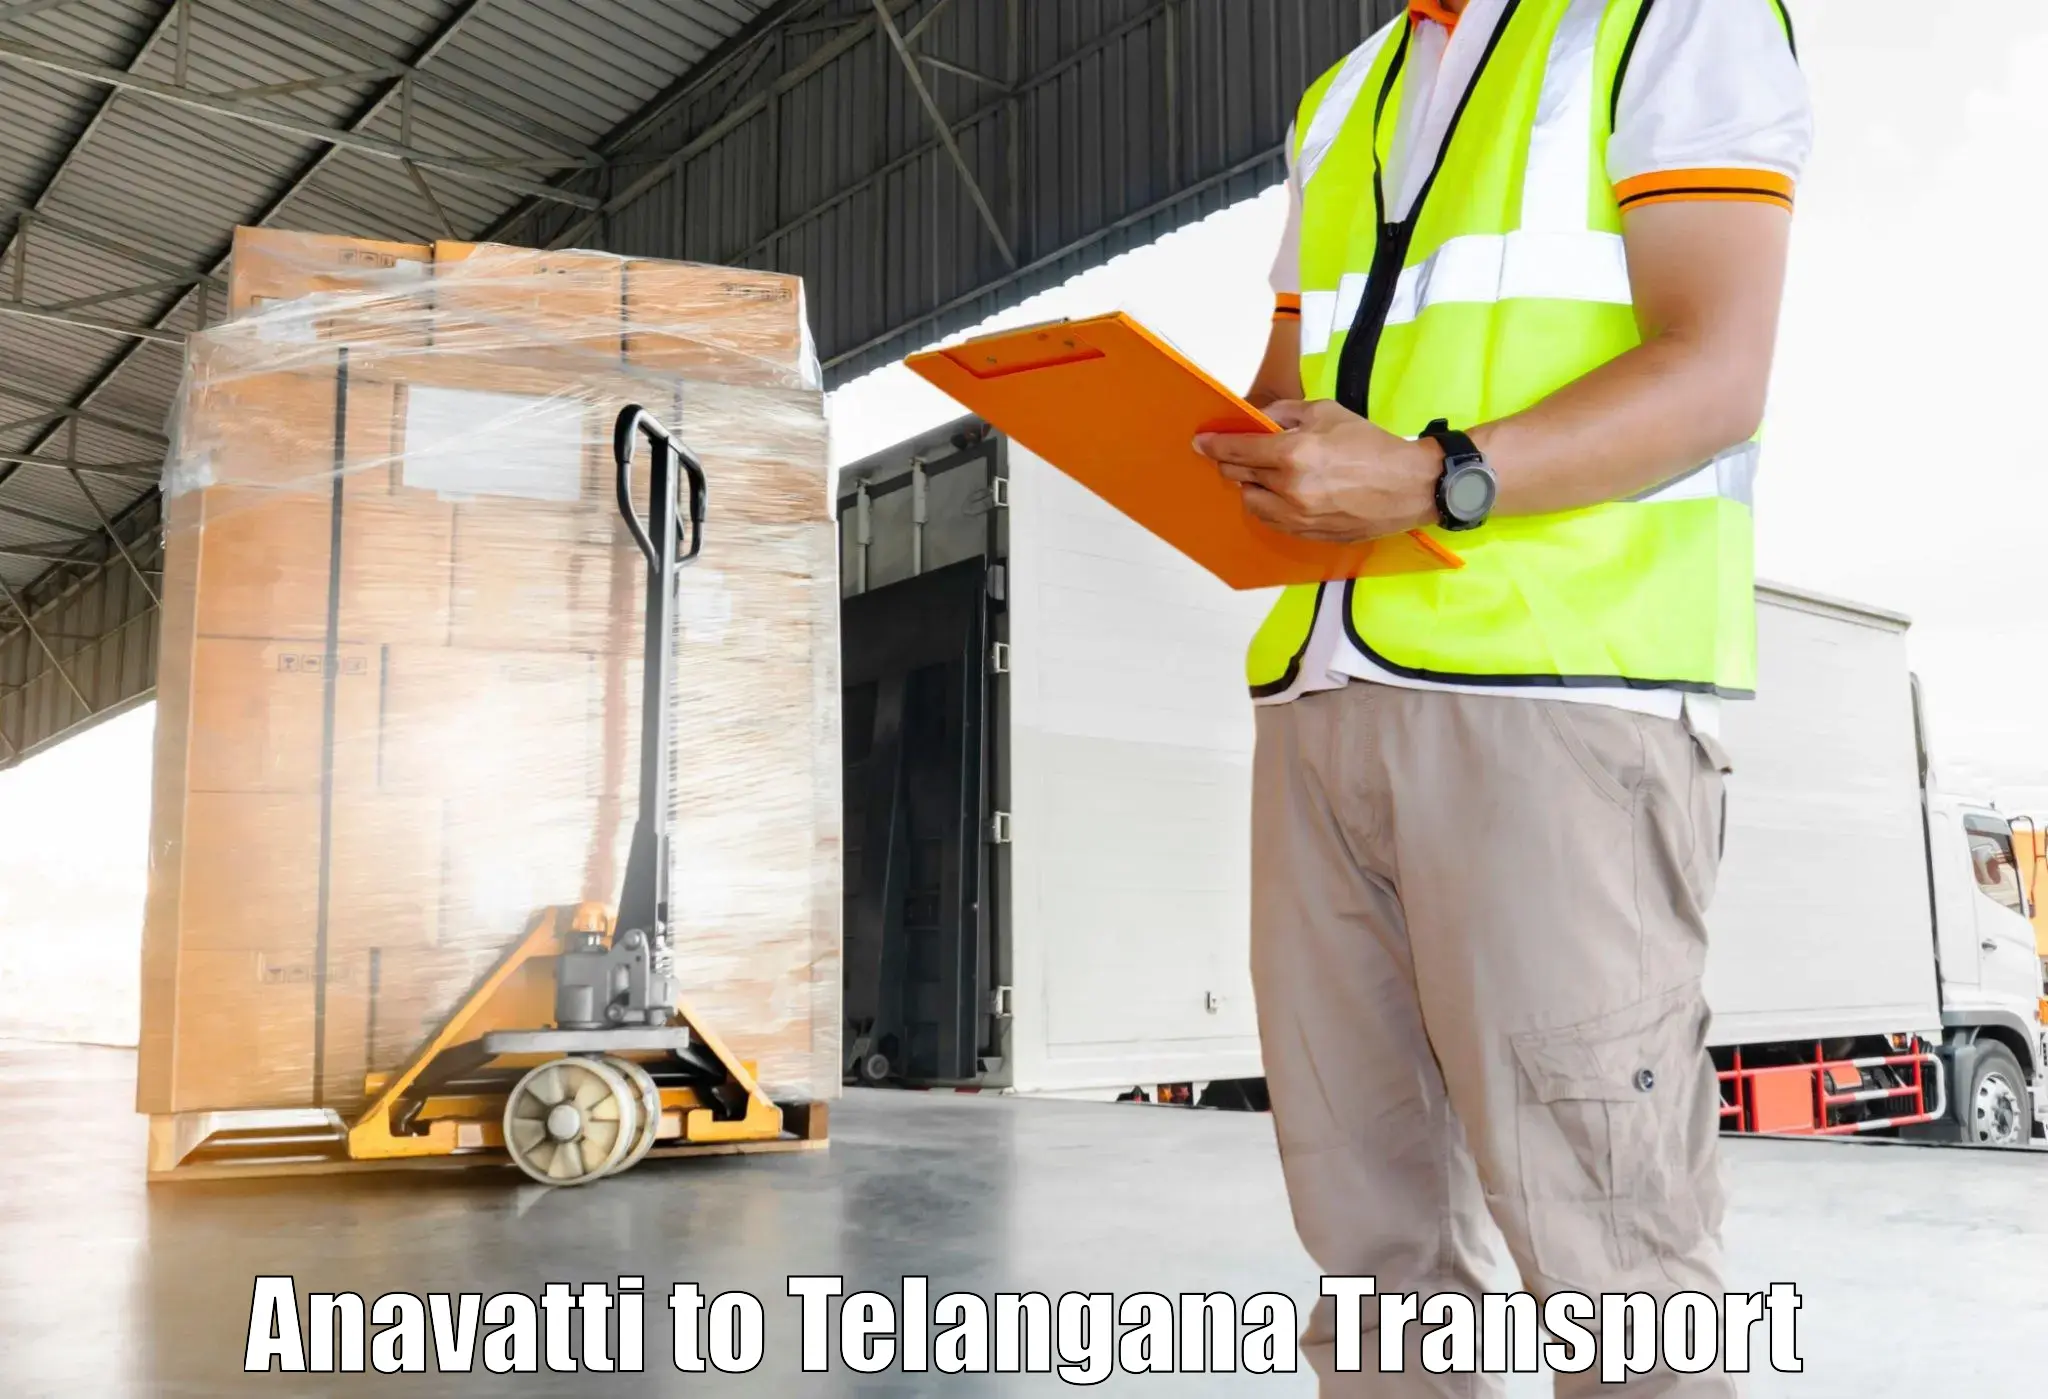 Two wheeler parcel service in Anavatti to Karimnagar